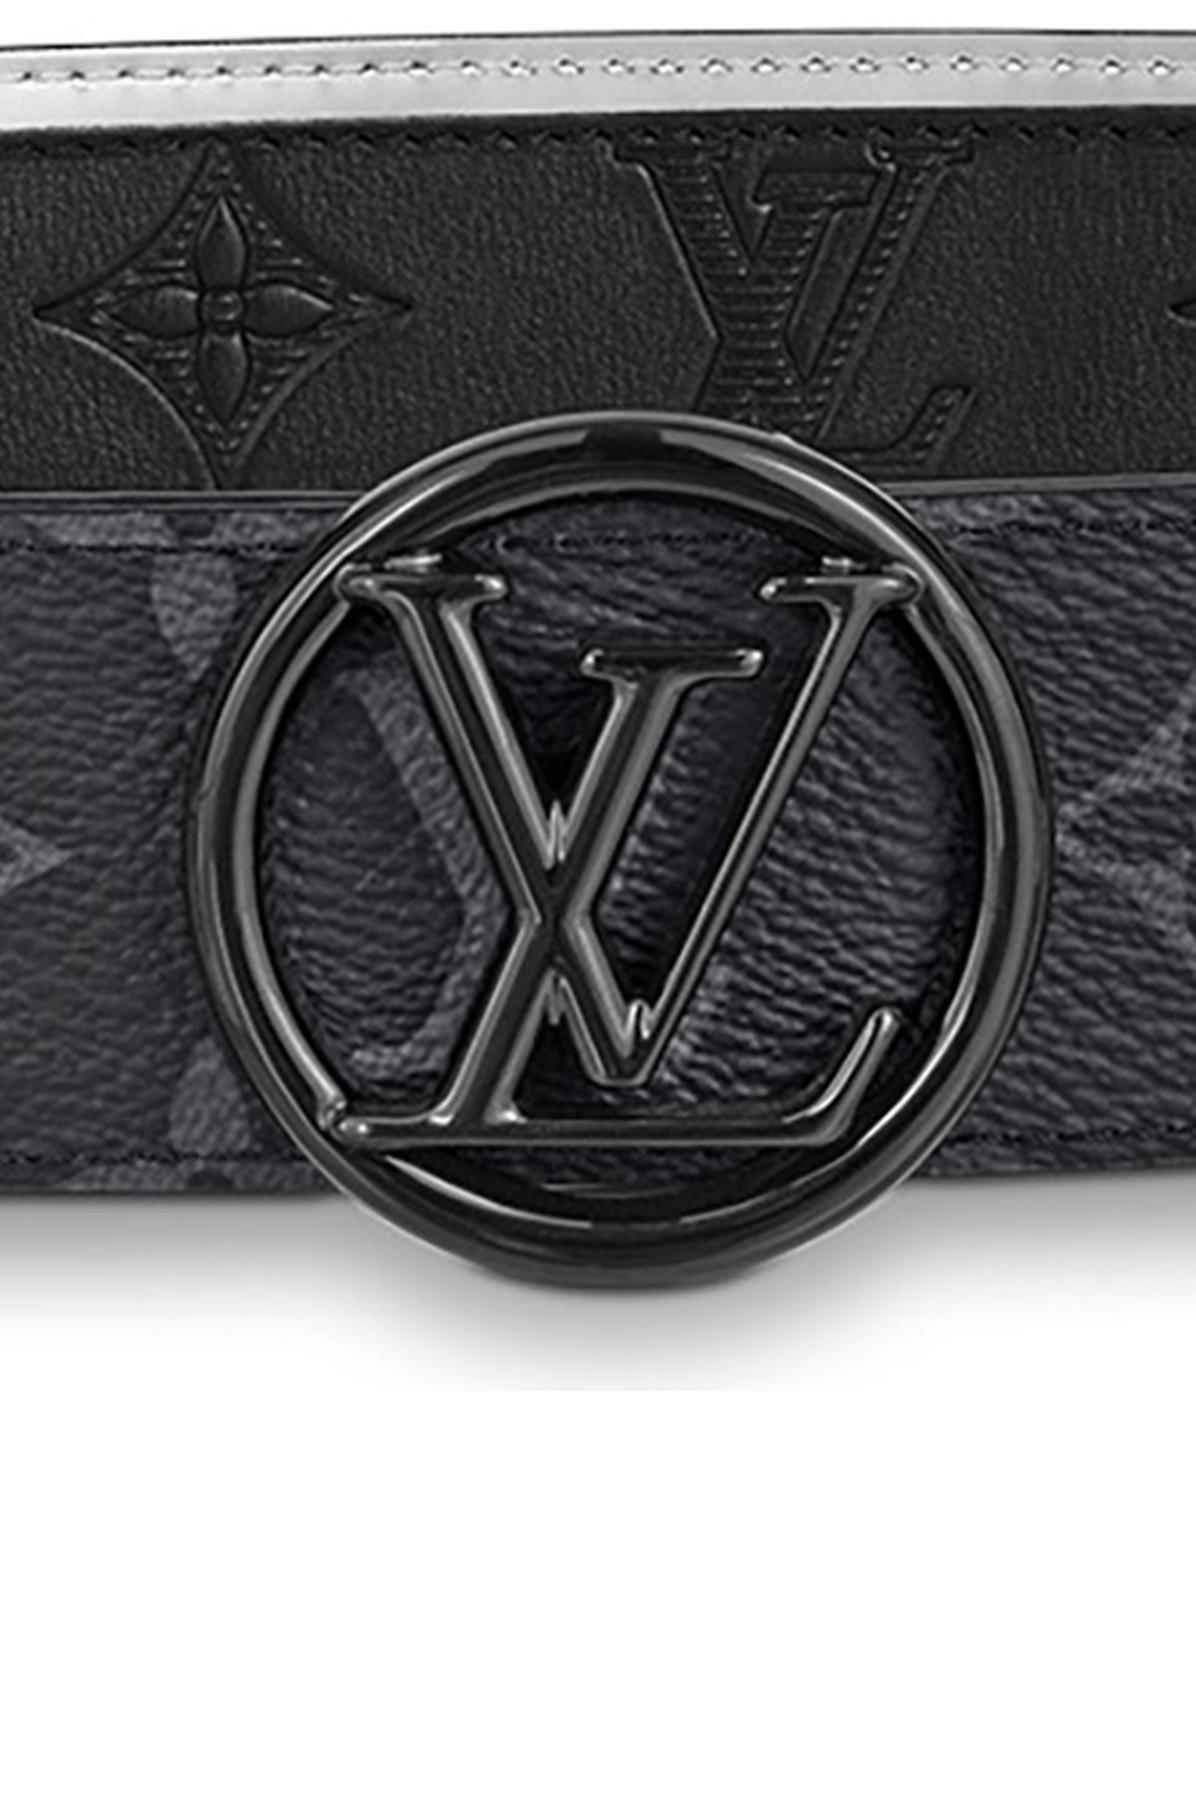 Louis Vuitton LV Circle 35mm Reversible Belt Black + Cowhide. Size 80 cm